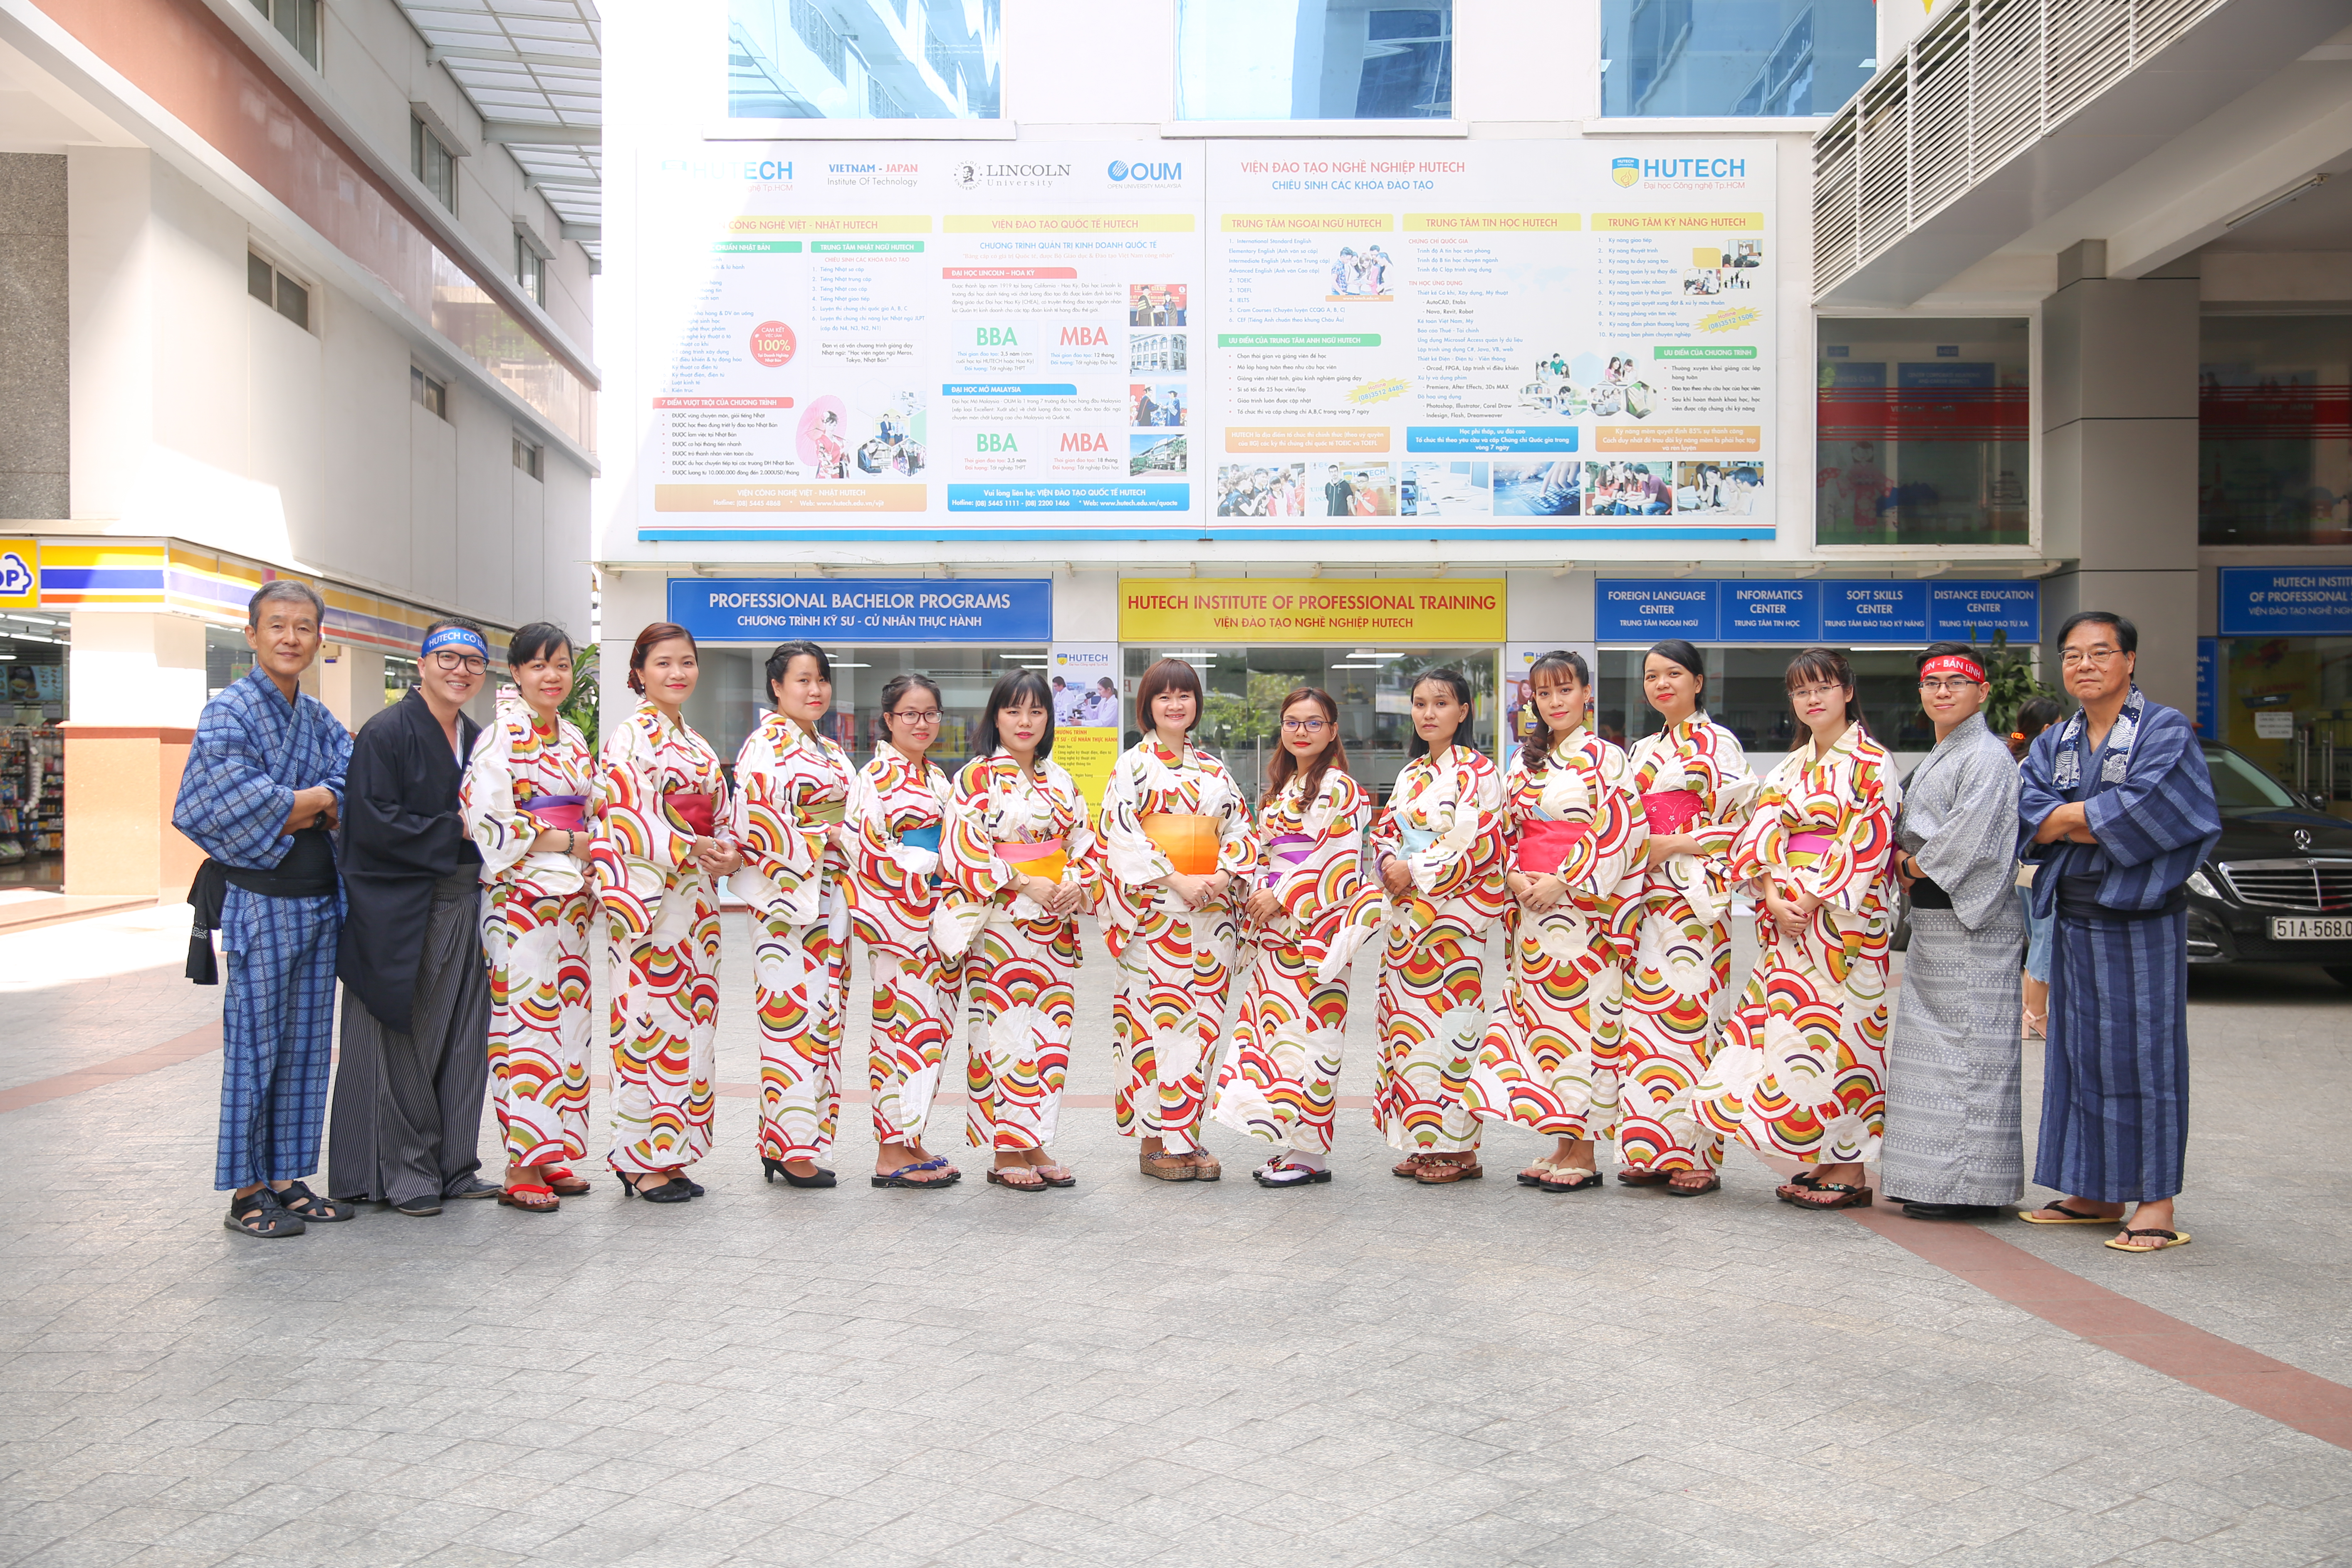 Khoa Nhật Bản học chào mừng ngày 20/11 trong trang phục truyền thống Nhật Bản 19